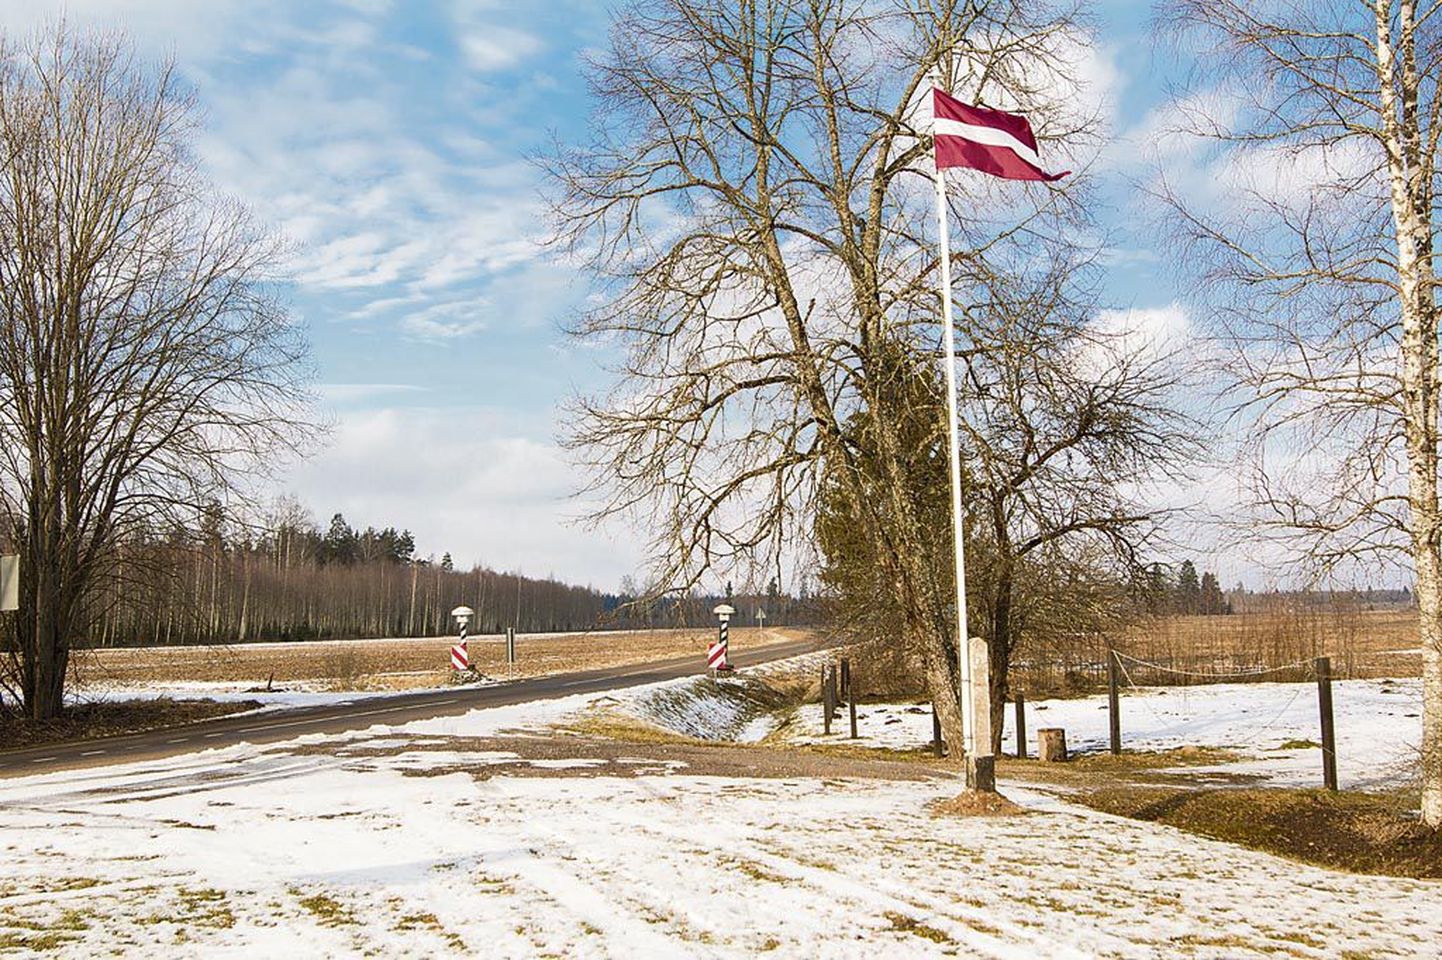 Ramata poolt vaadates paistavad Eesti ja Jäärja küla lageda ja kõledana.